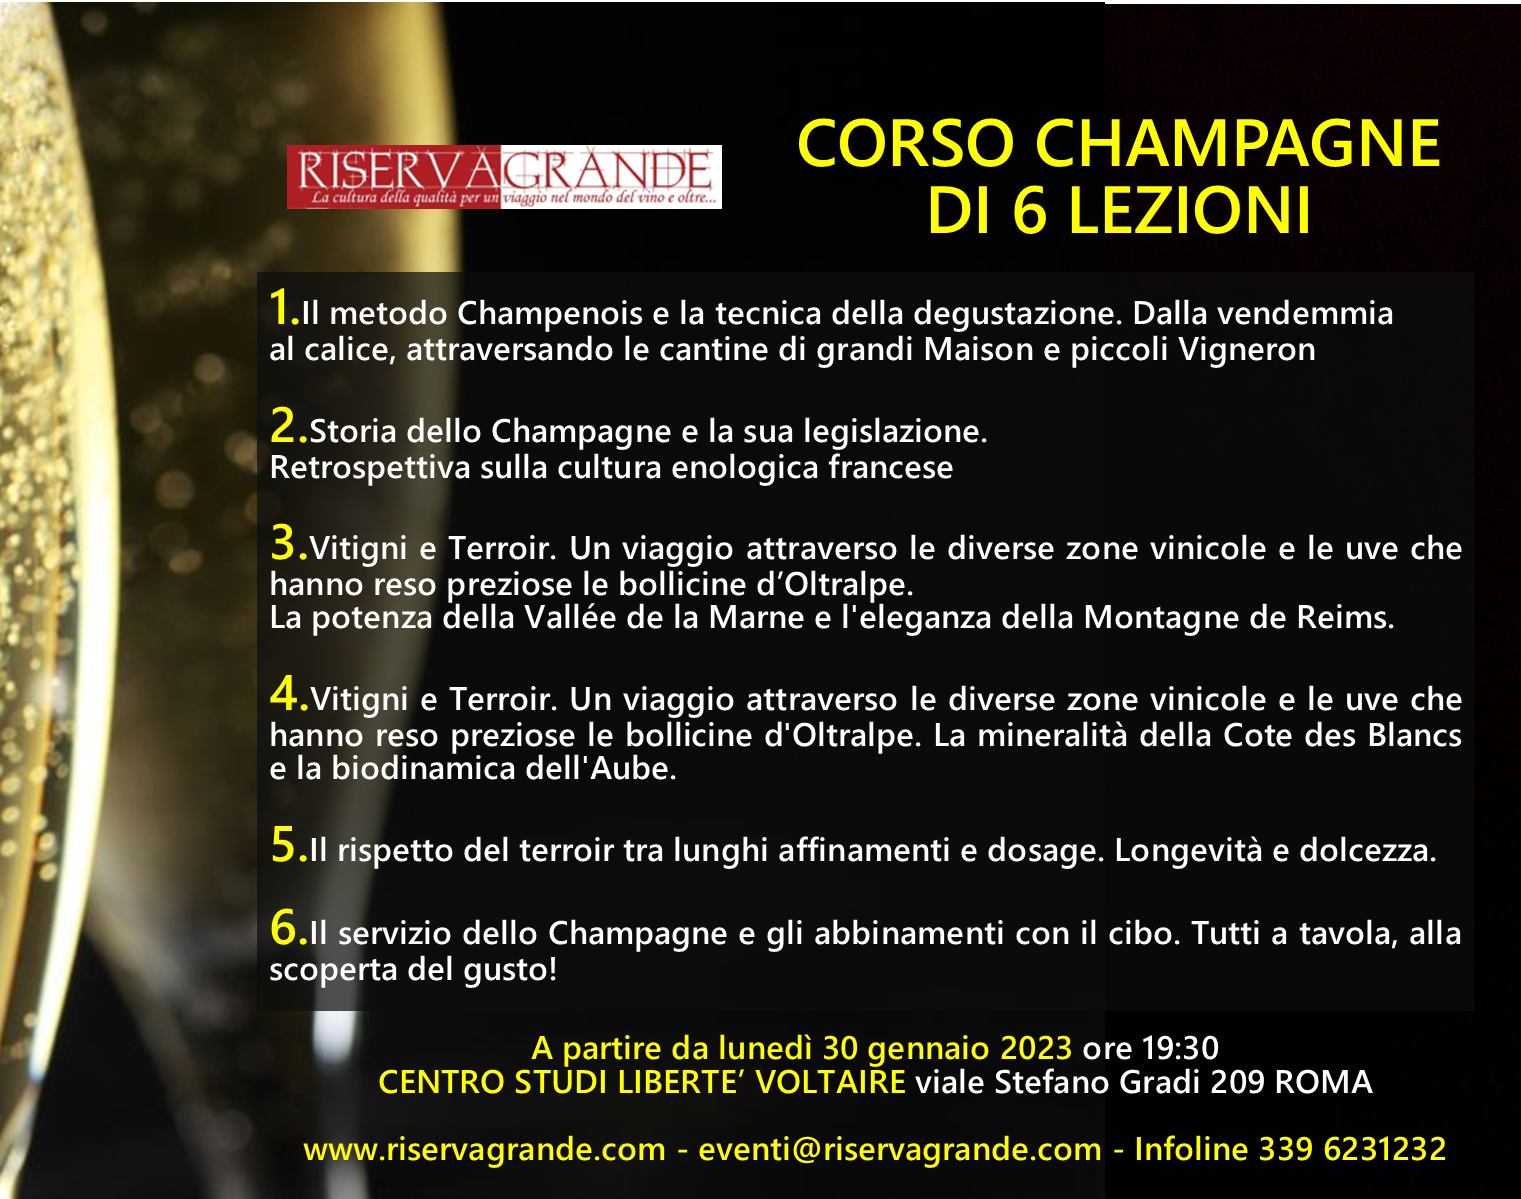 Corso Champagne di 6 lezioni a partire da lunedì 31 gennaio, foto da comunicato stampa, articolo: Rome Wine Expo 2023